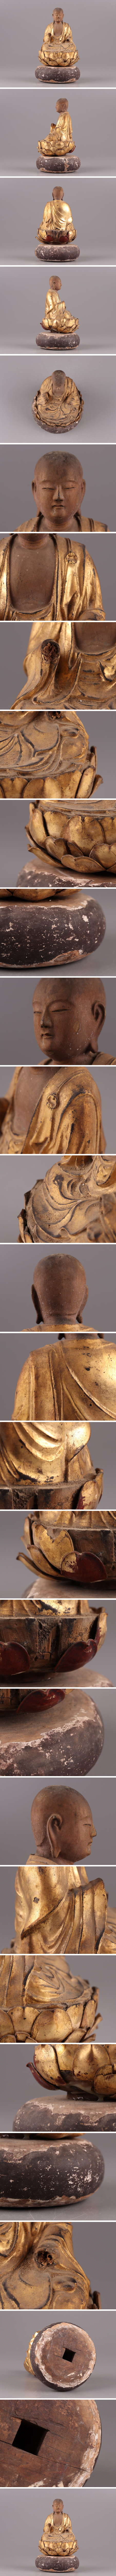 公式通販 中国古玩 唐物 仏教美術 時代木彫 金彩 地蔵菩薩 仏像 古作